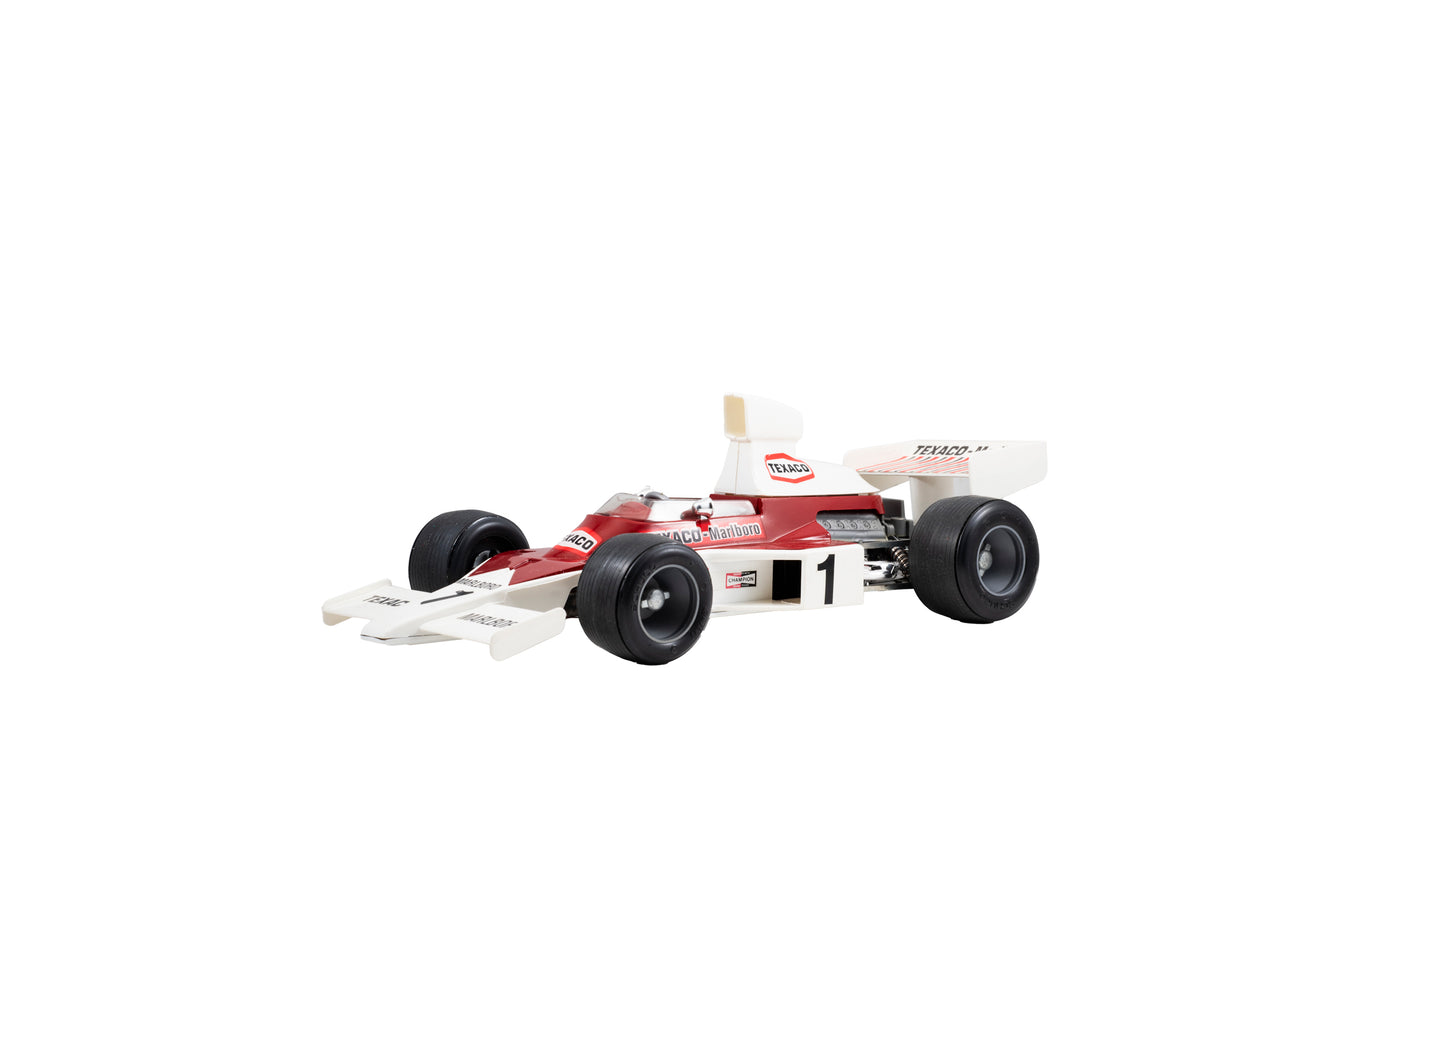 McLaren Ford Formula I Clockwork Racer from Schuco